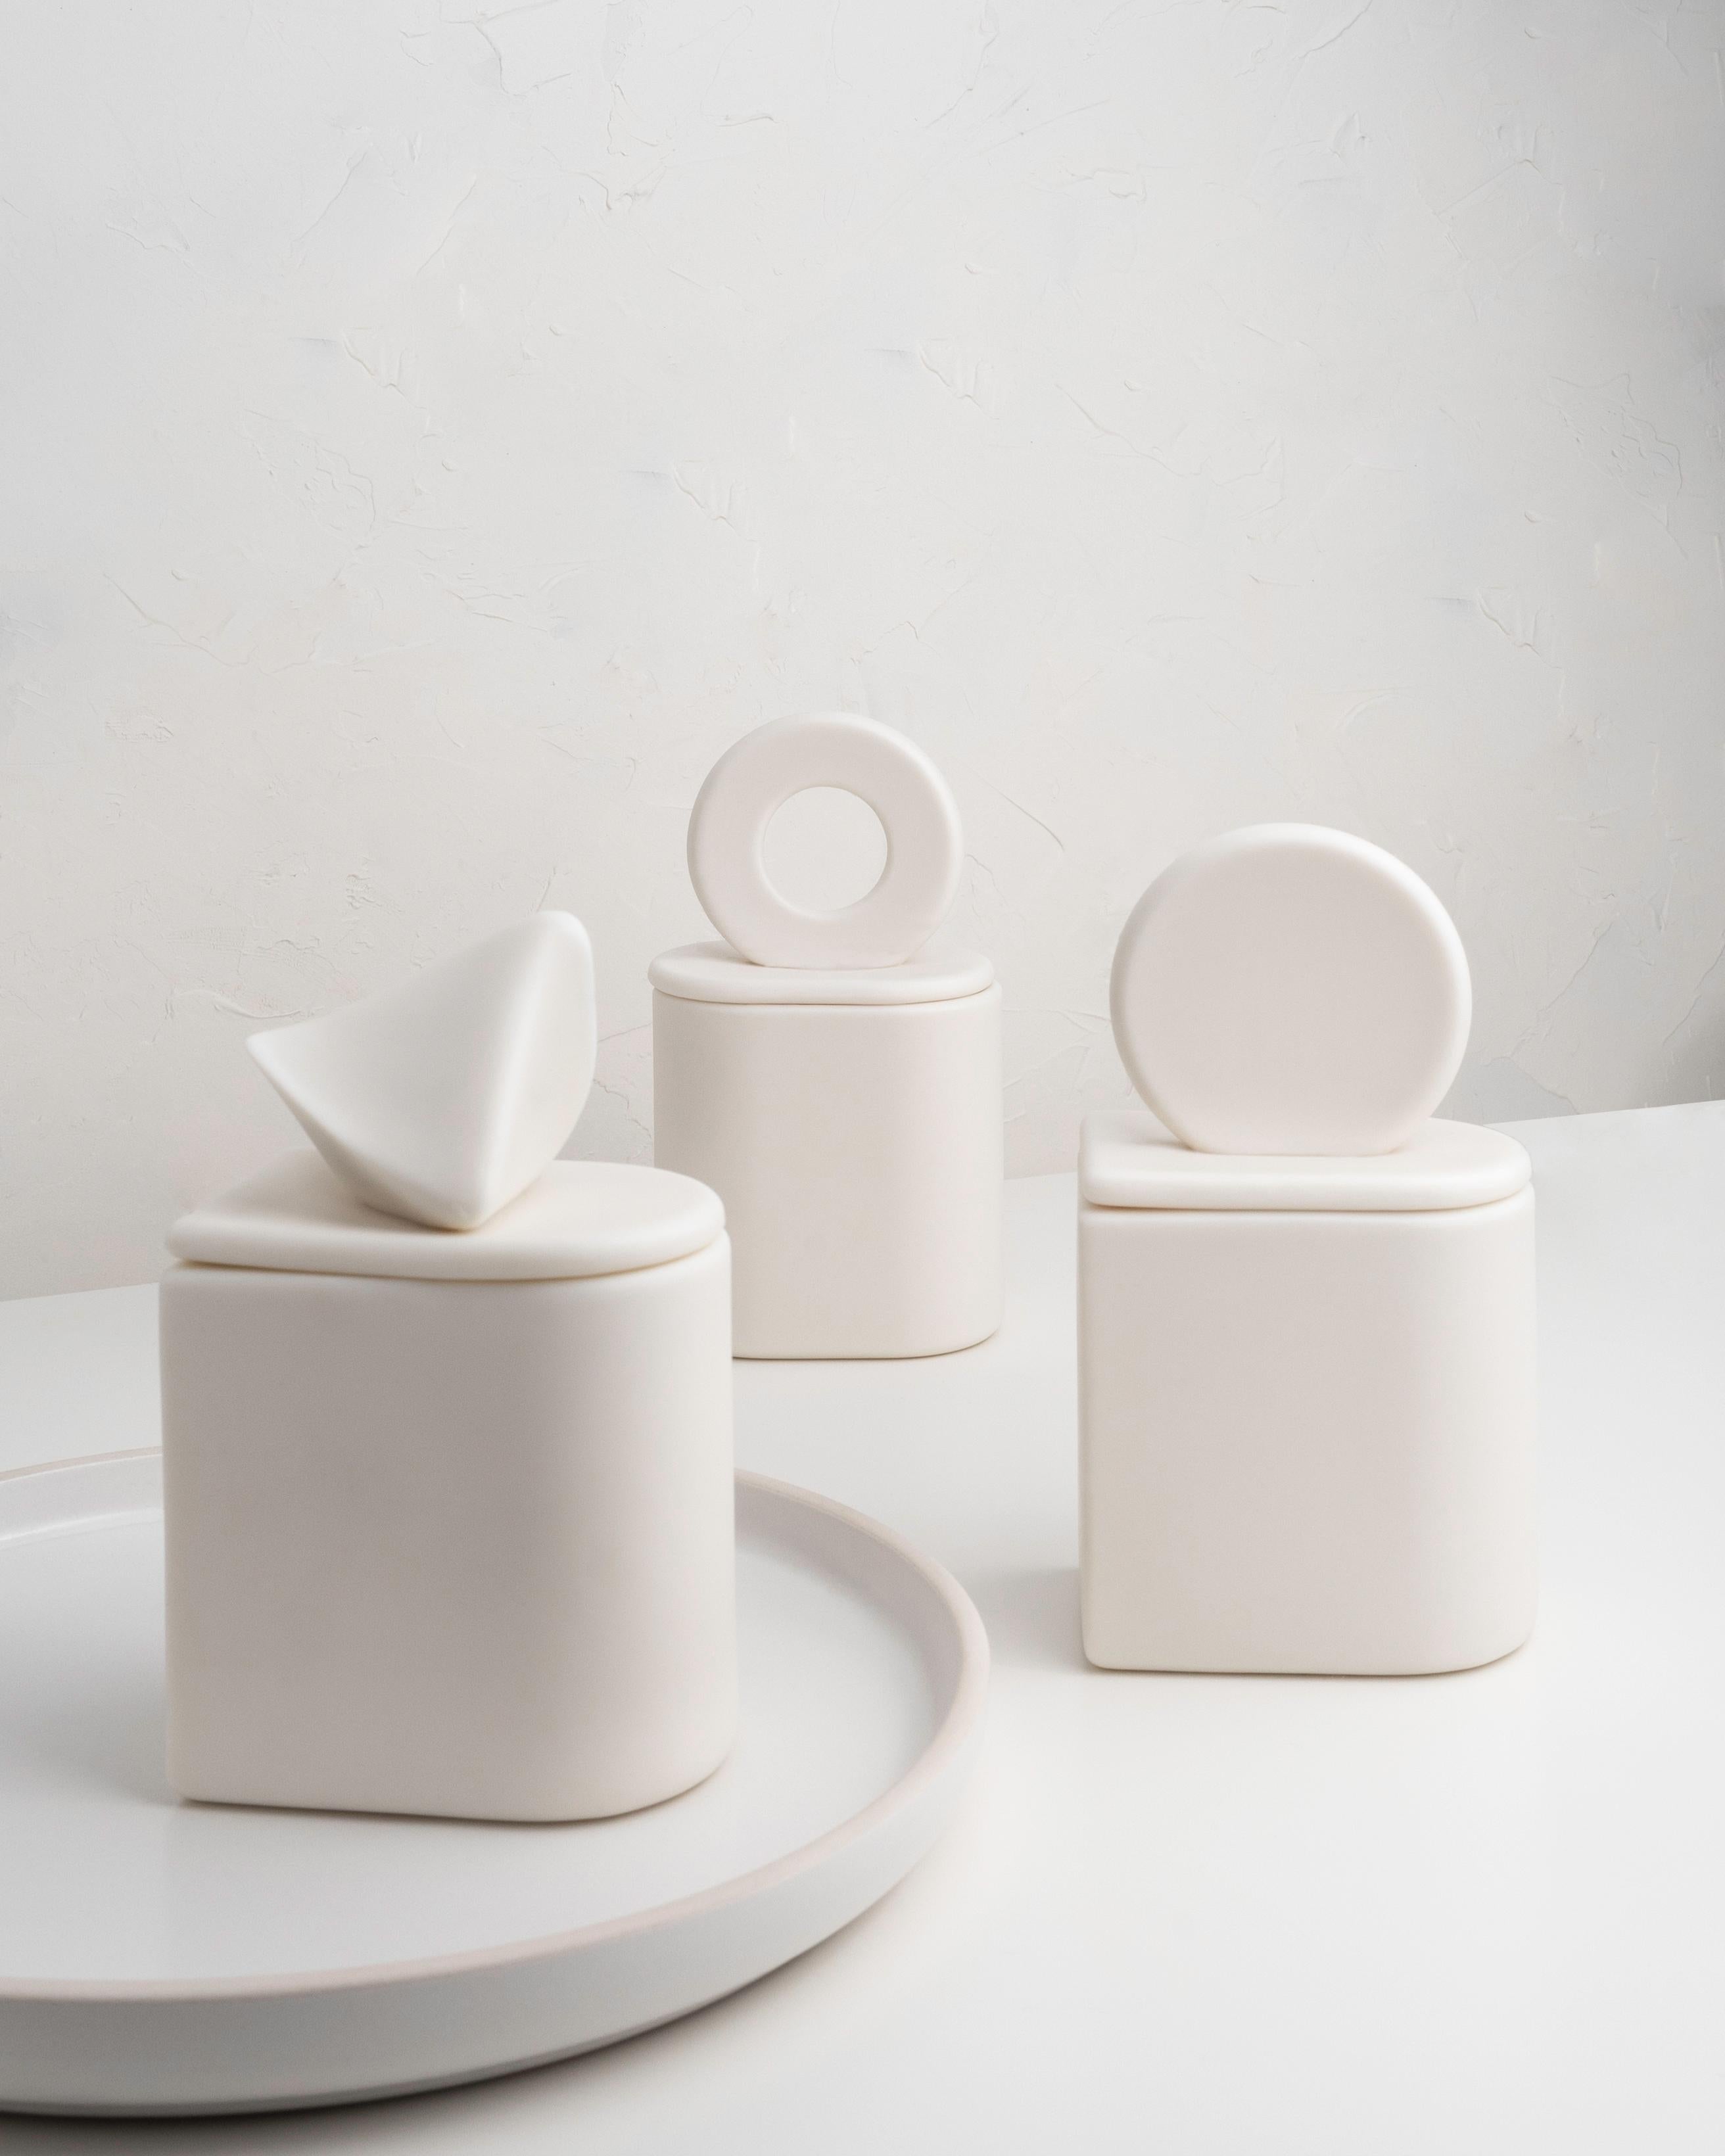 Ungleichmäßig. Ein minimalistischer Keramikbehälter aus Parian-Porzellan. 

Eine von der Natur und klassischen Formen inspirierte Kollektion.

Parian-Porzellangefäße, unglasiert.

- • 160 g natürliches Sojawachs

- • ca. 30 h Brenndauer

-